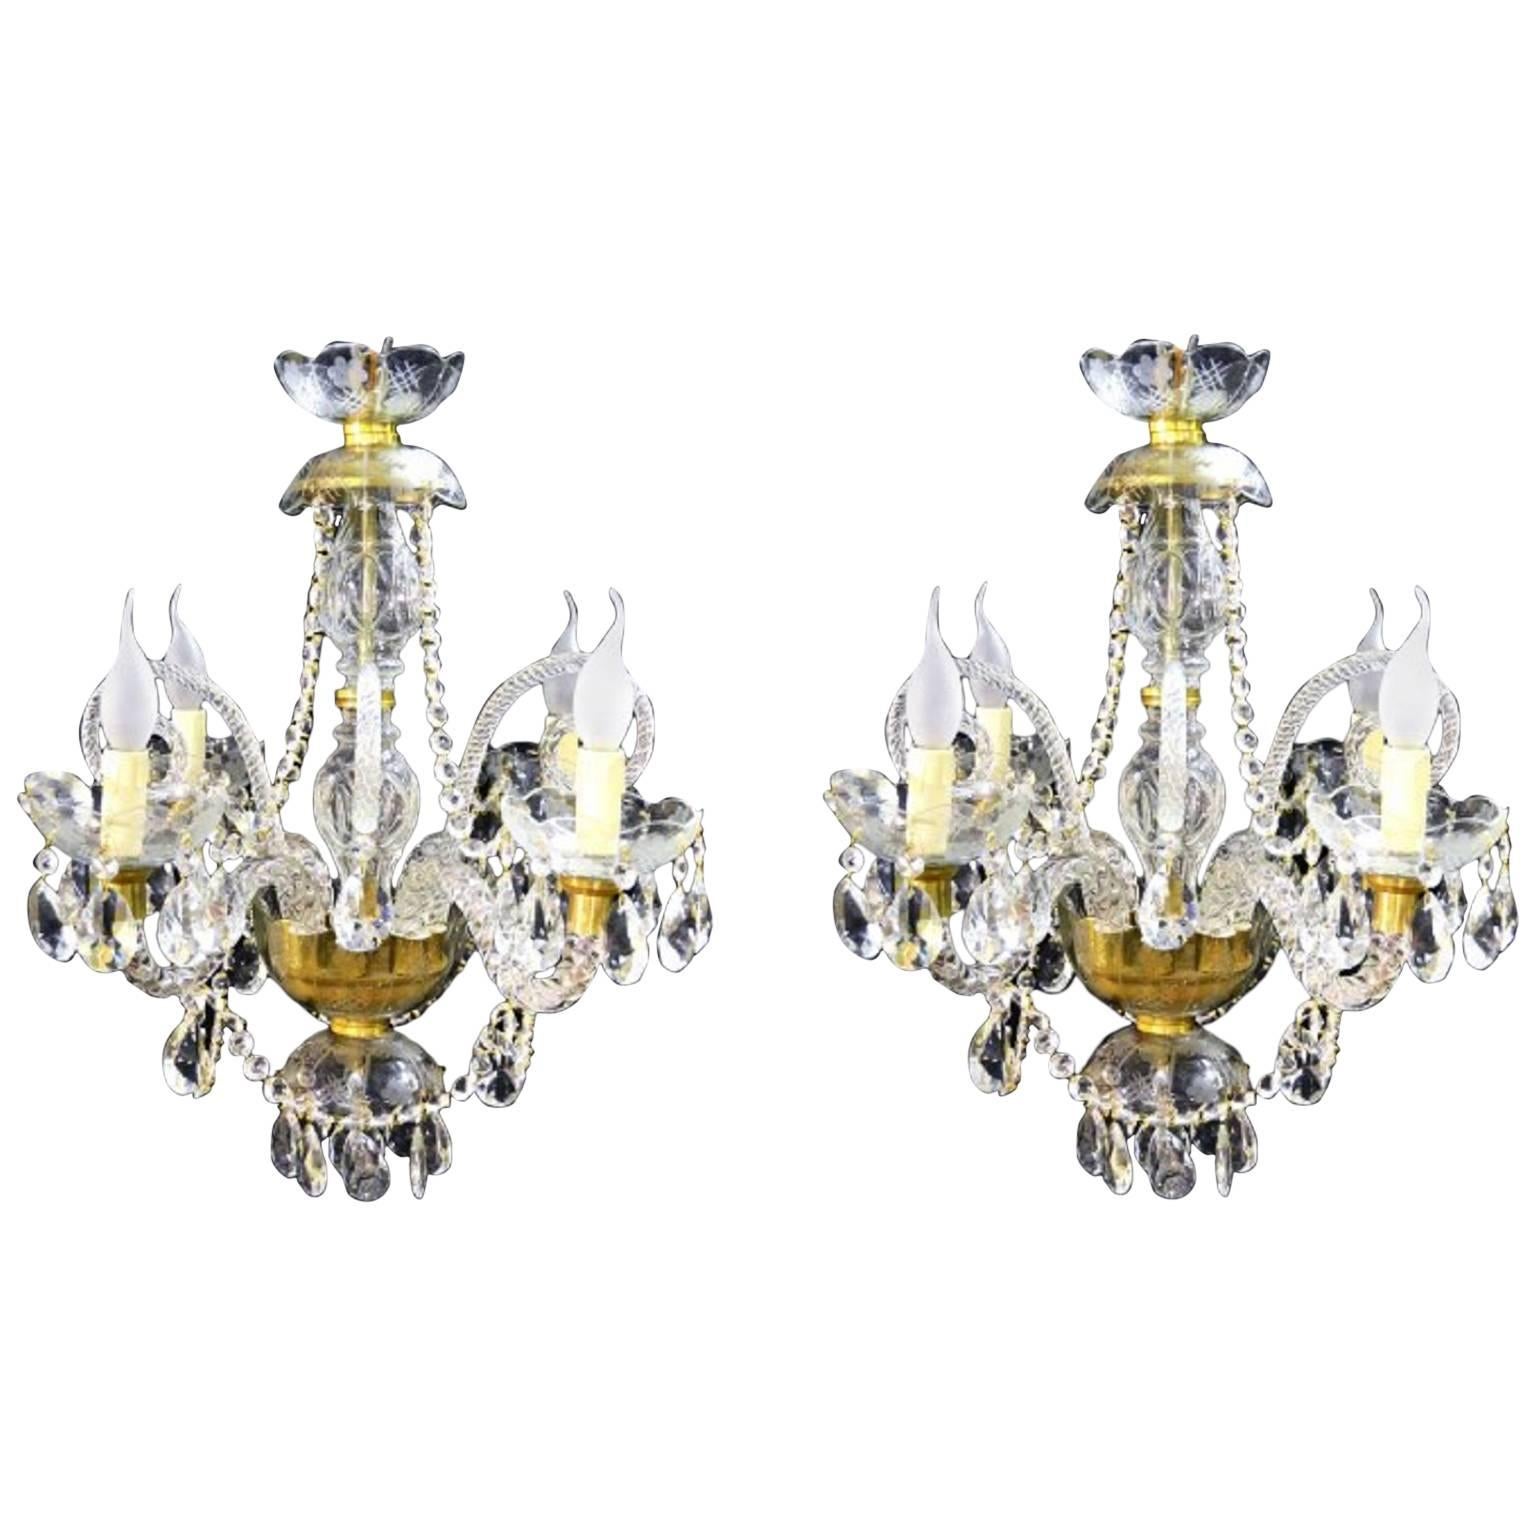 Pair of Vintage Venetian Four-Light Crystal Chandeliers